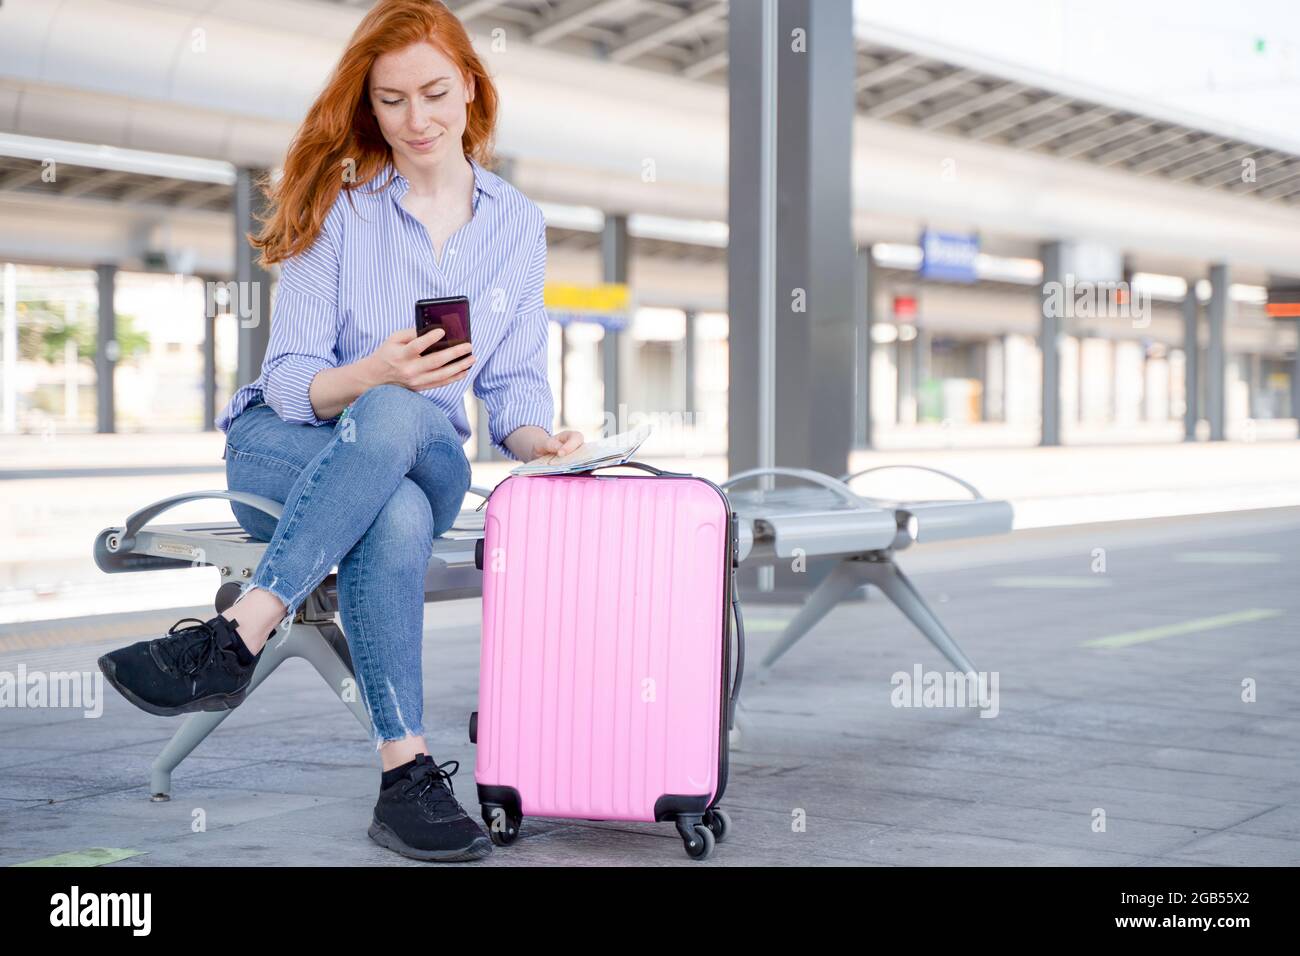 Mujer joven sosteniendo un teléfono móvil sentado en la plataforma de la estación de tren Foto de stock